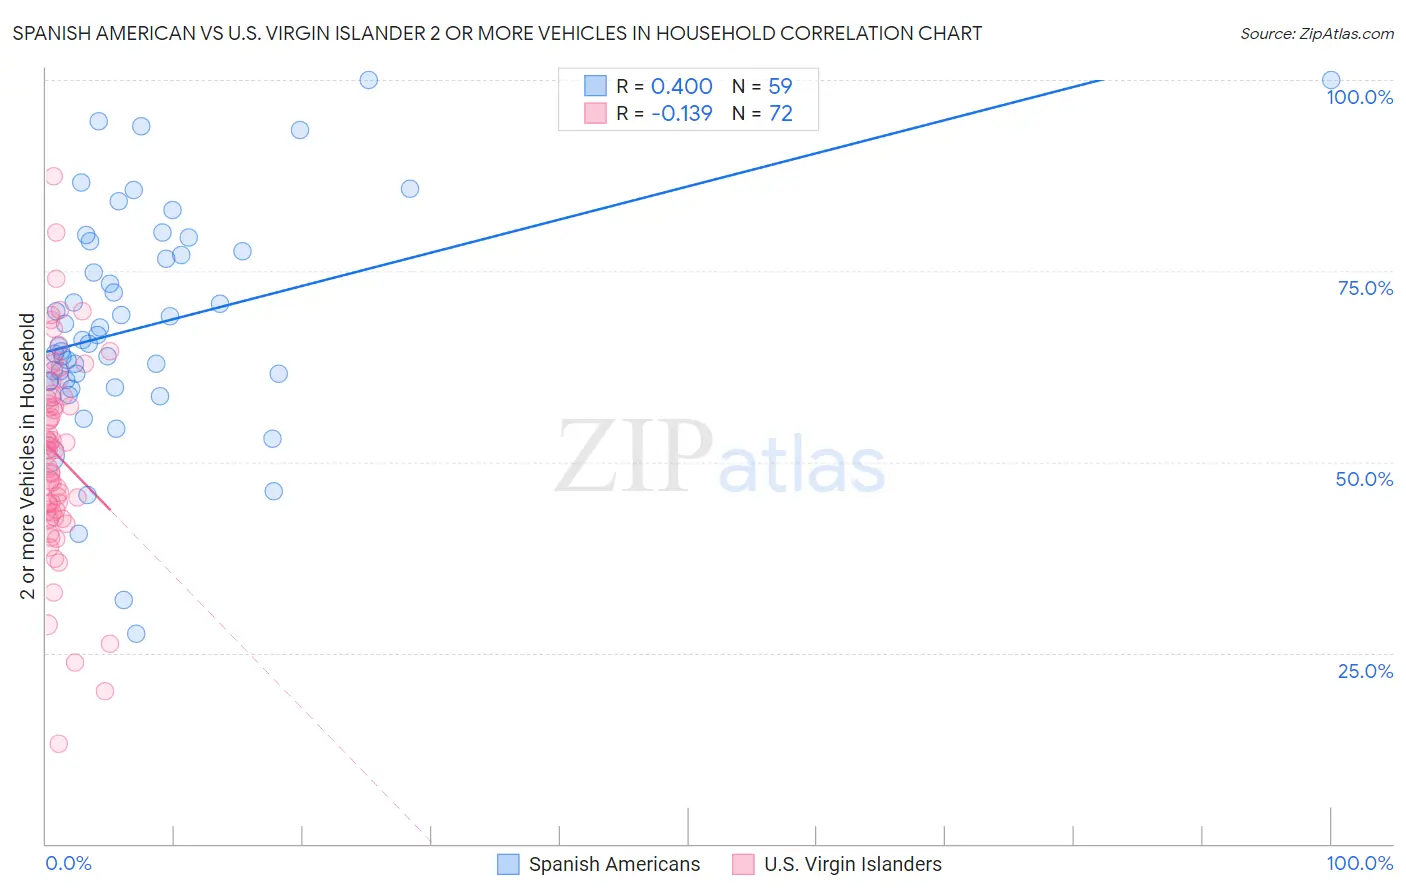 Spanish American vs U.S. Virgin Islander 2 or more Vehicles in Household